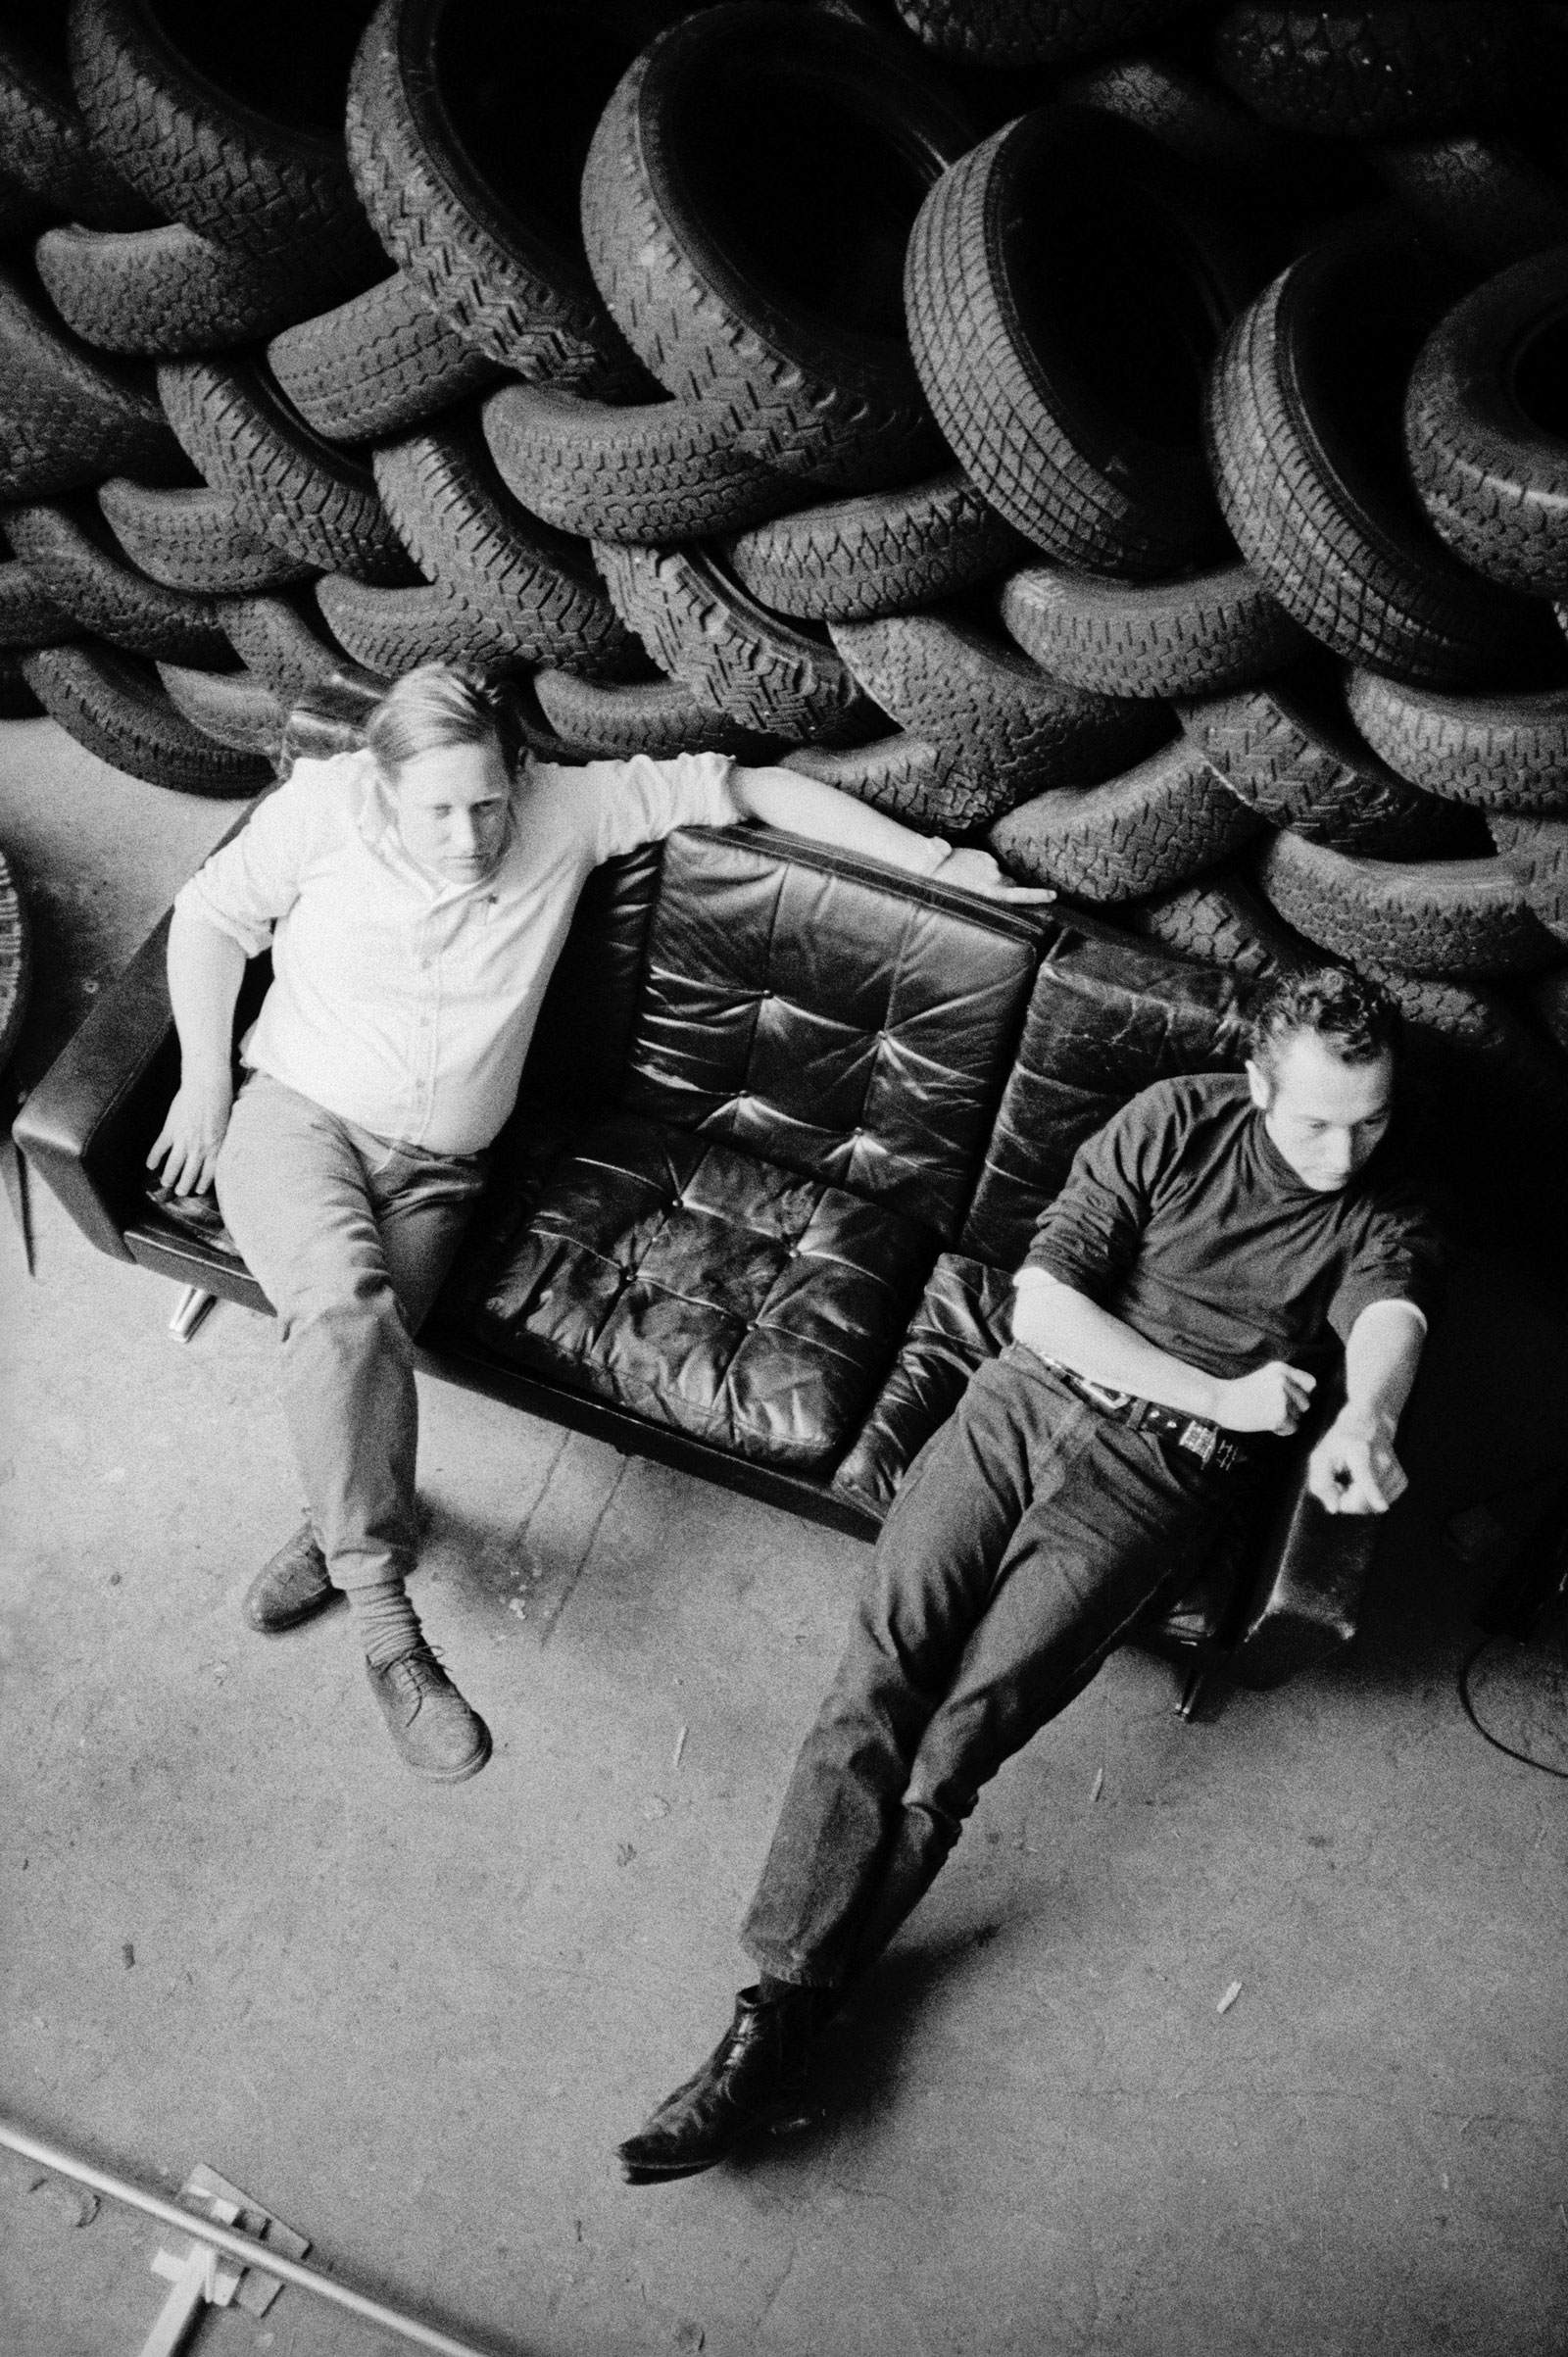 David Weiss and Peter Fischli in their Zürich studio, circa 1987